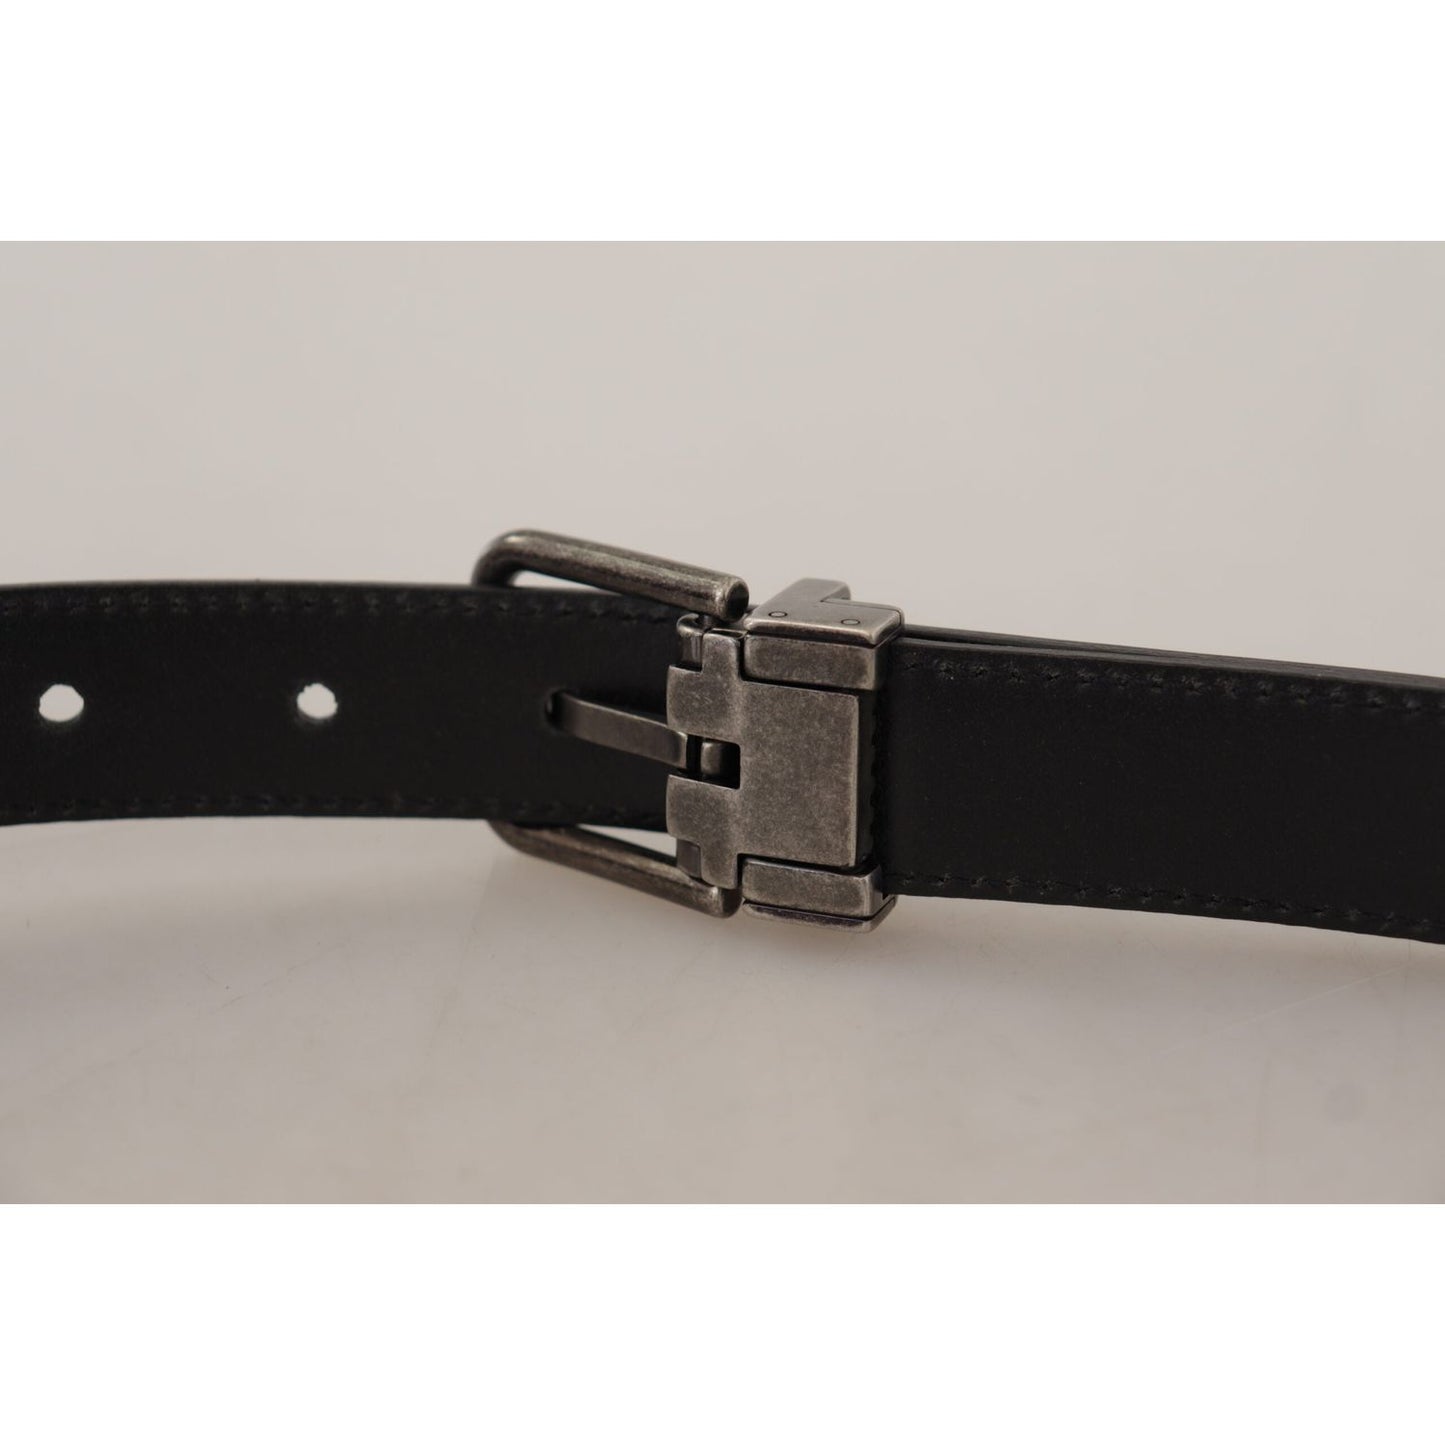 Dolce & Gabbana Elegant Black Leather Belt with Metal Buckle black-plain-leather-vintage-logo-metal-buckle-belt